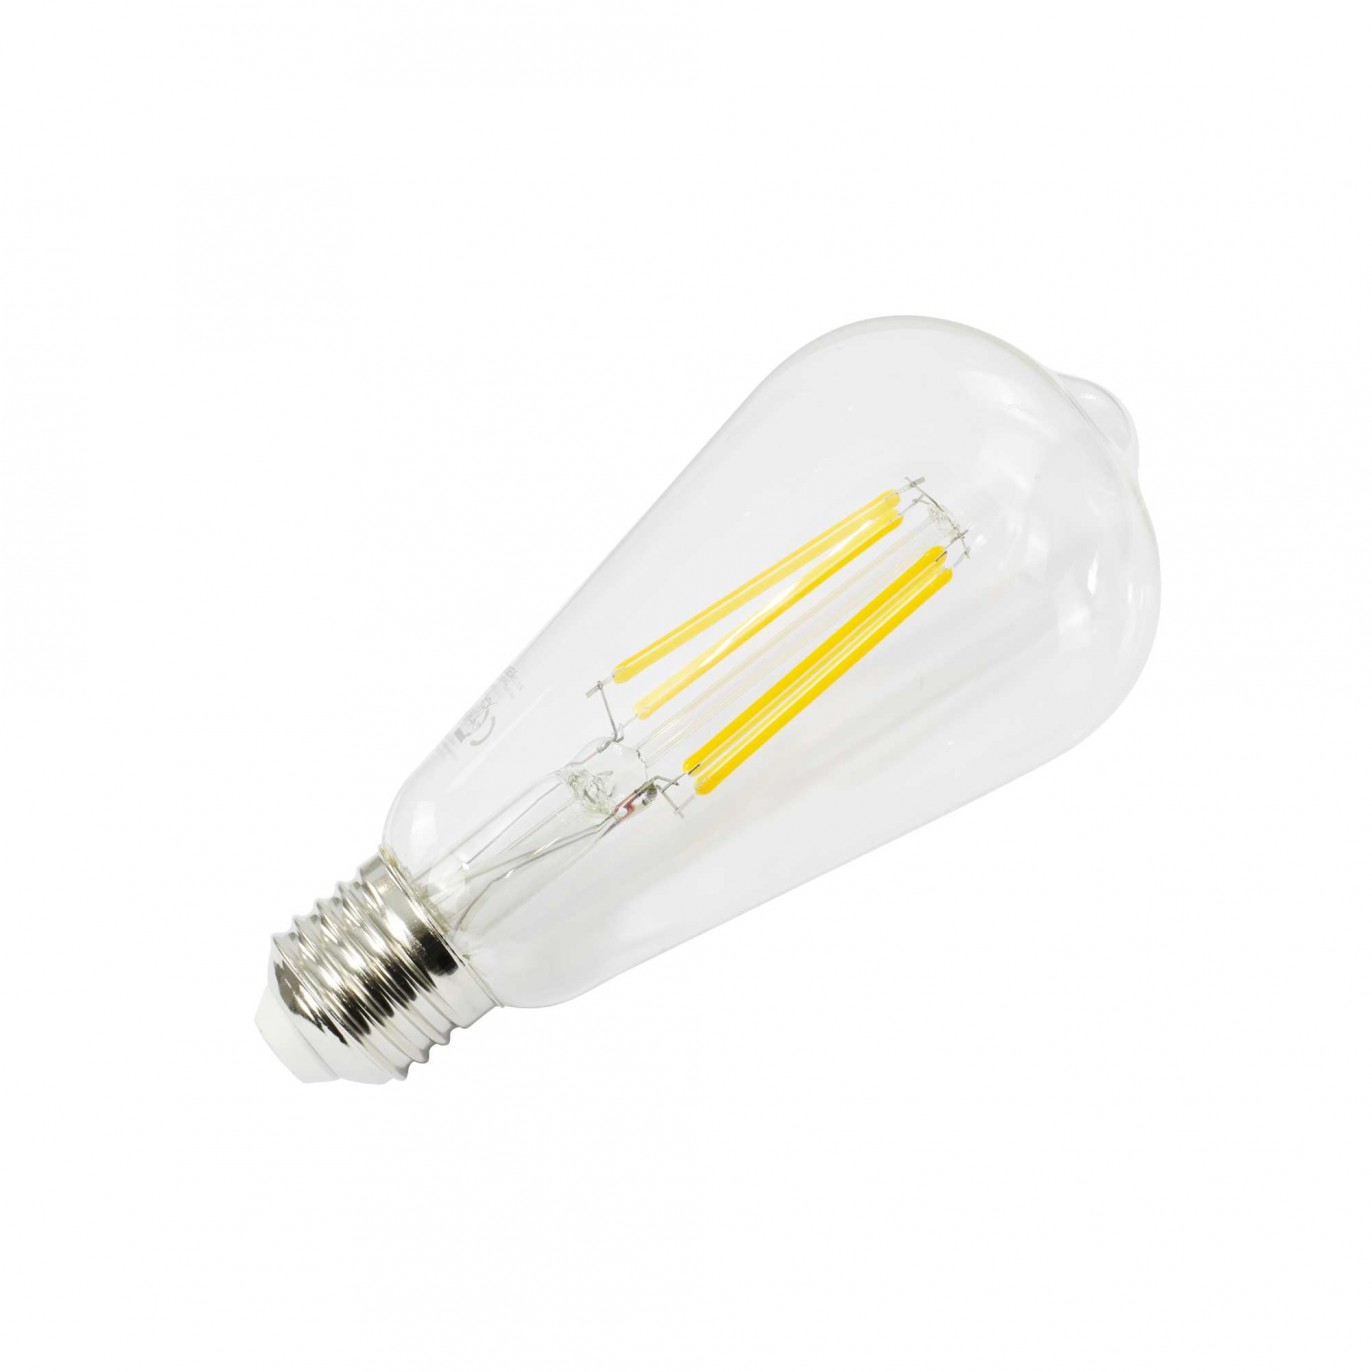 Acheter Ampoule à Filament ST64 Gold 8W E27 Dimmable - Vintage